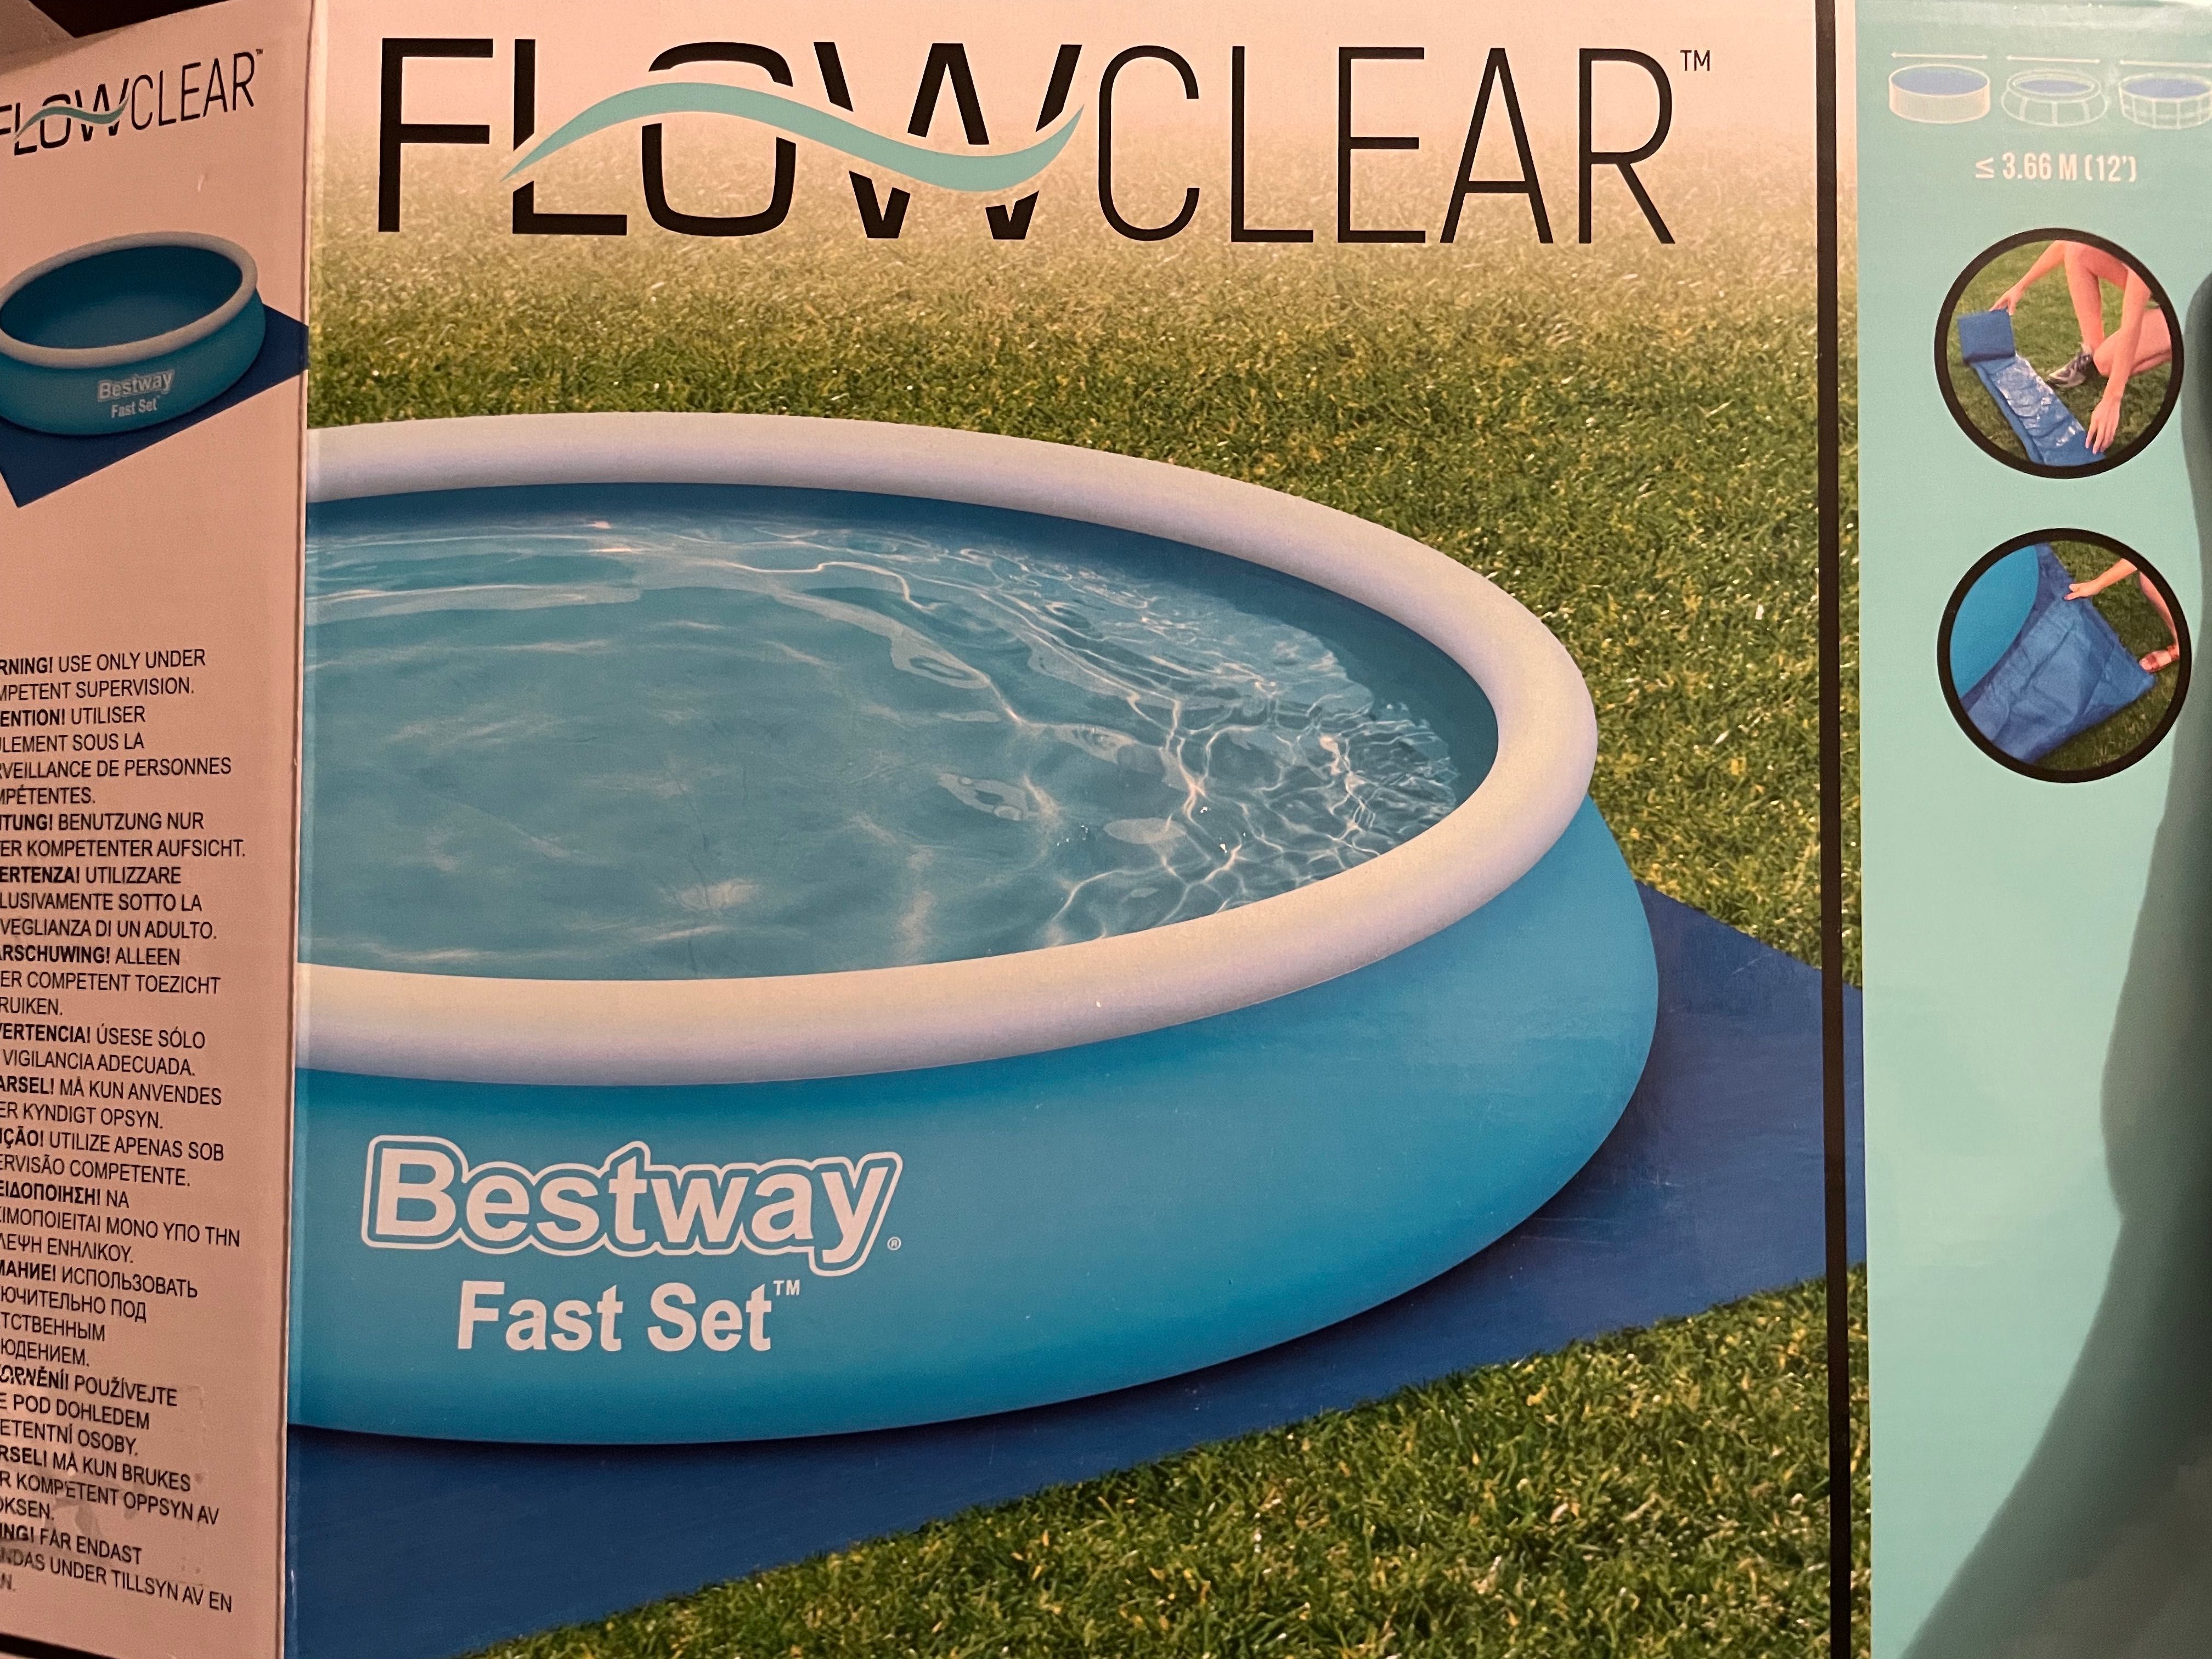 Basen Bestway Fast set + pokrywa Flowclear i automatyczny dmuchacz